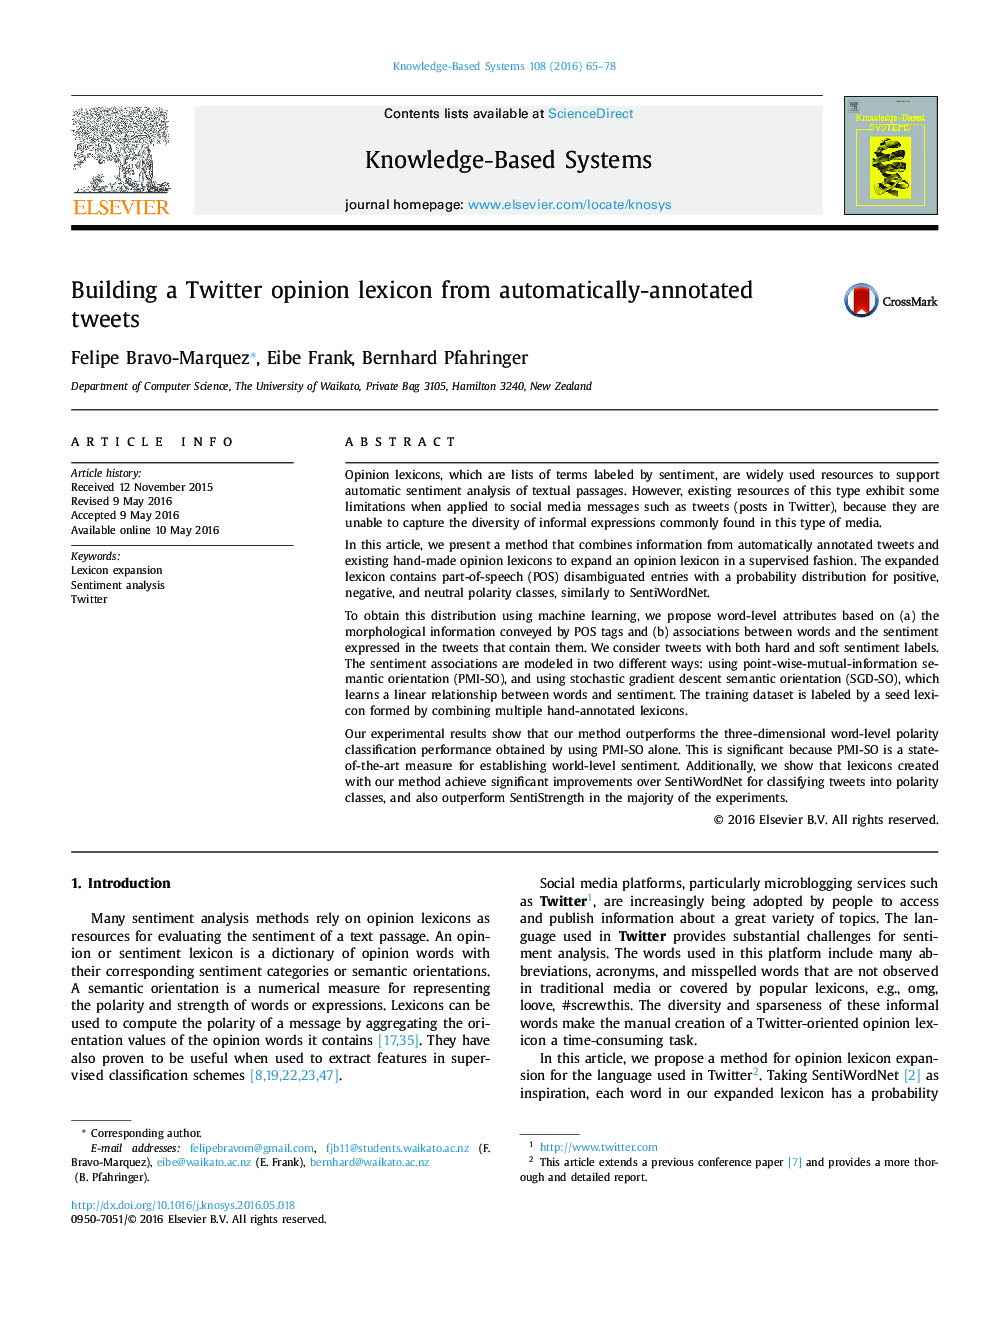 ساخت واژگان افکار عمومی توییتر از توییت های به طور خودکار تفسیرشده